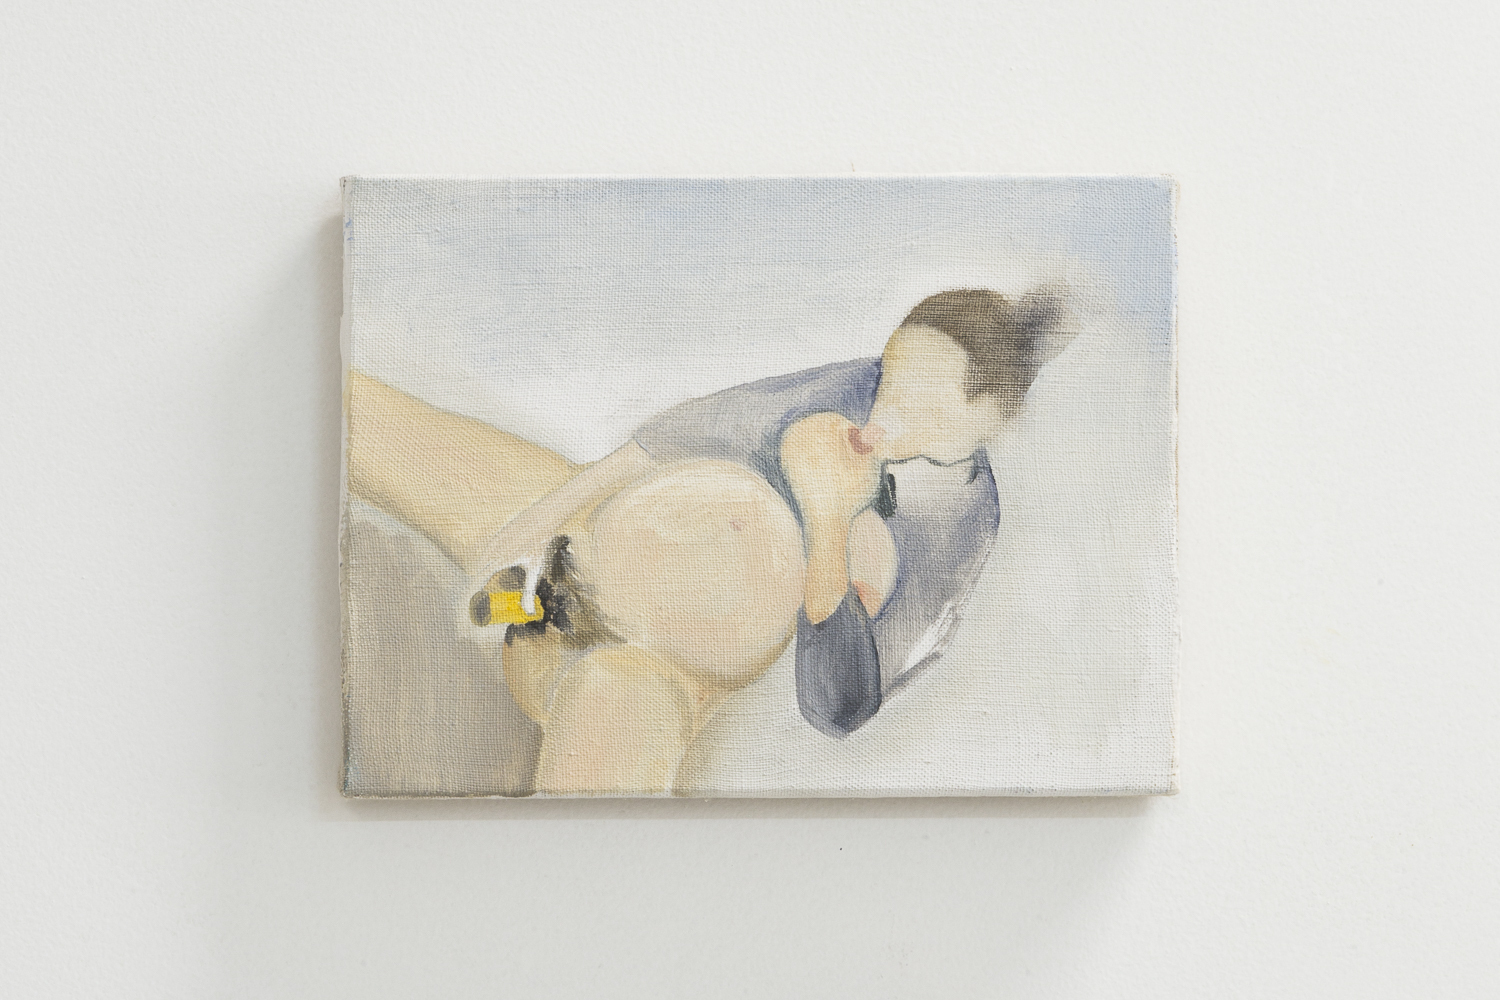 Mariana Mauricio, Untitled, 2021, Oil on Canvas 18 x 24 cm